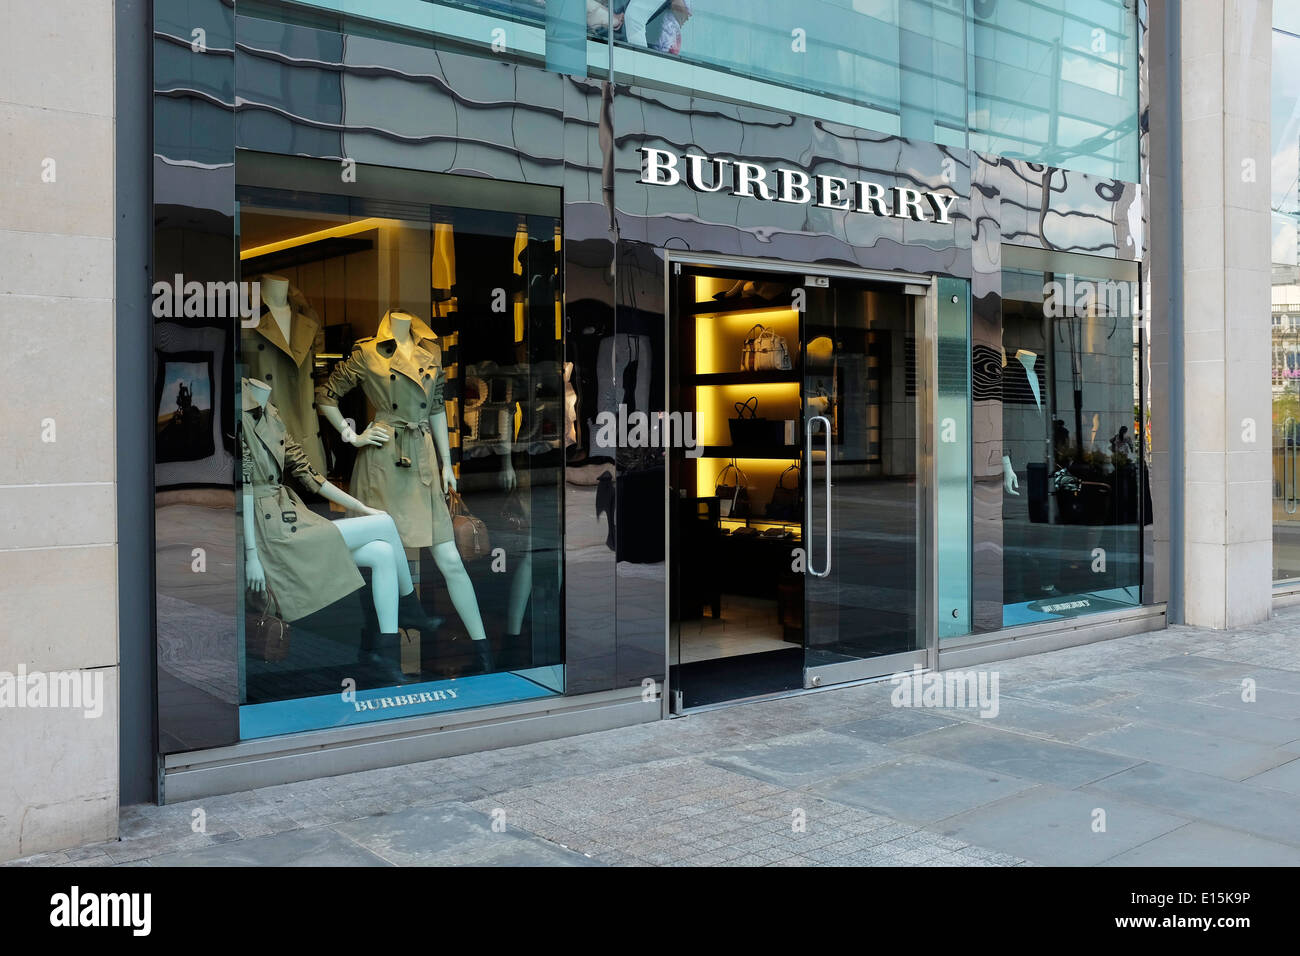 Burberry store front dans le centre-ville de Manchester UK Banque D'Images